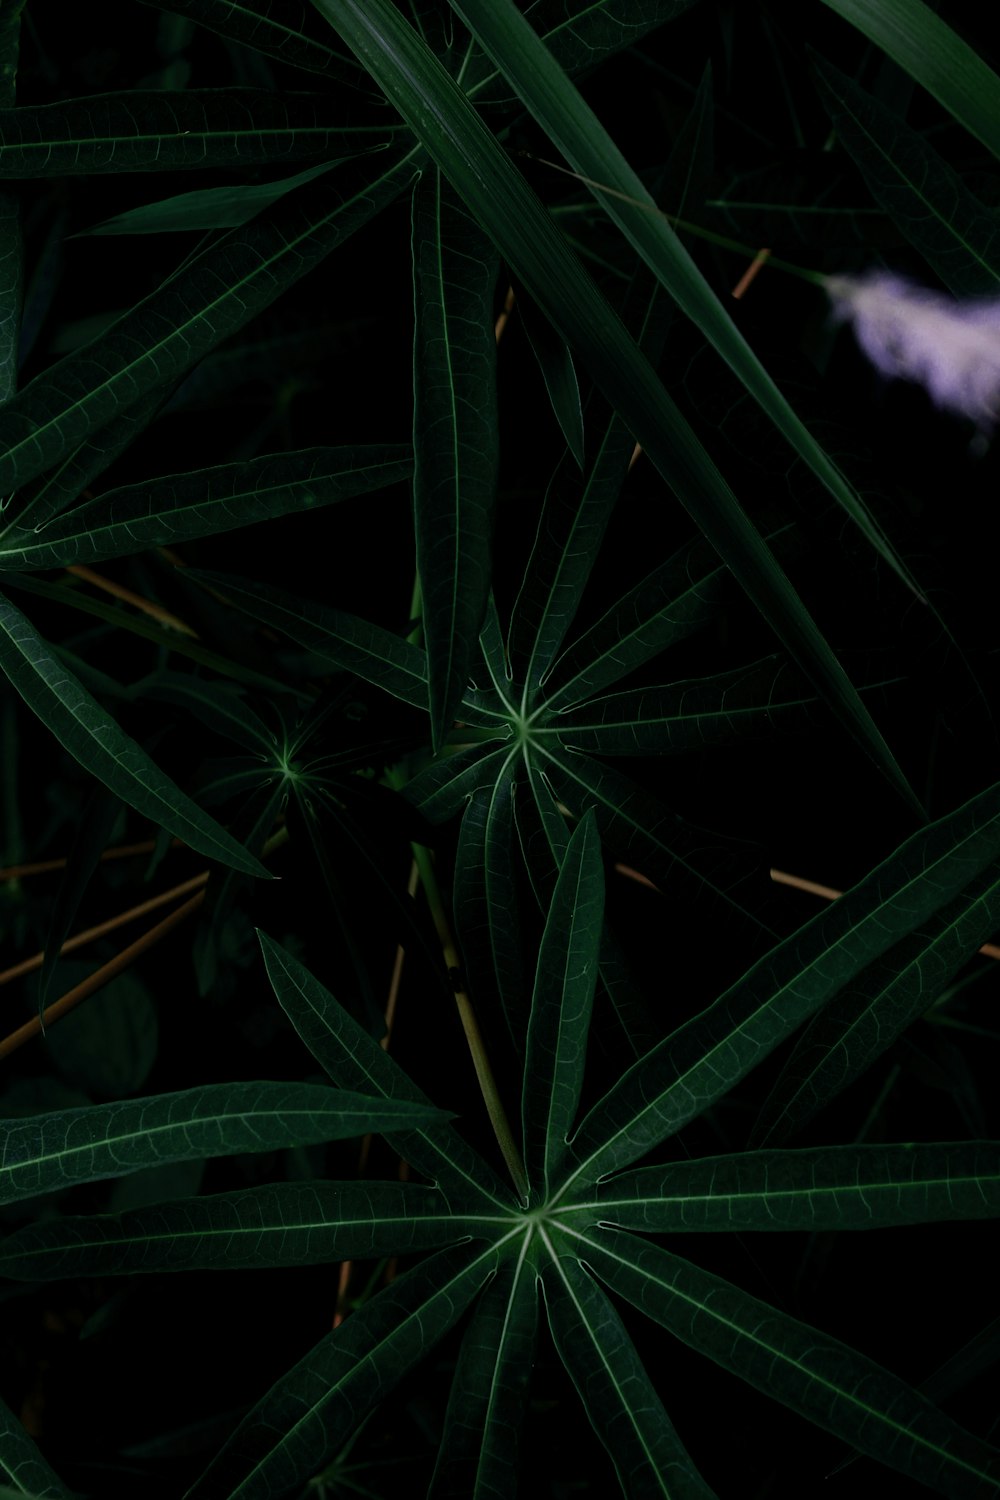 녹색 잎 식물의 클로즈업 사진